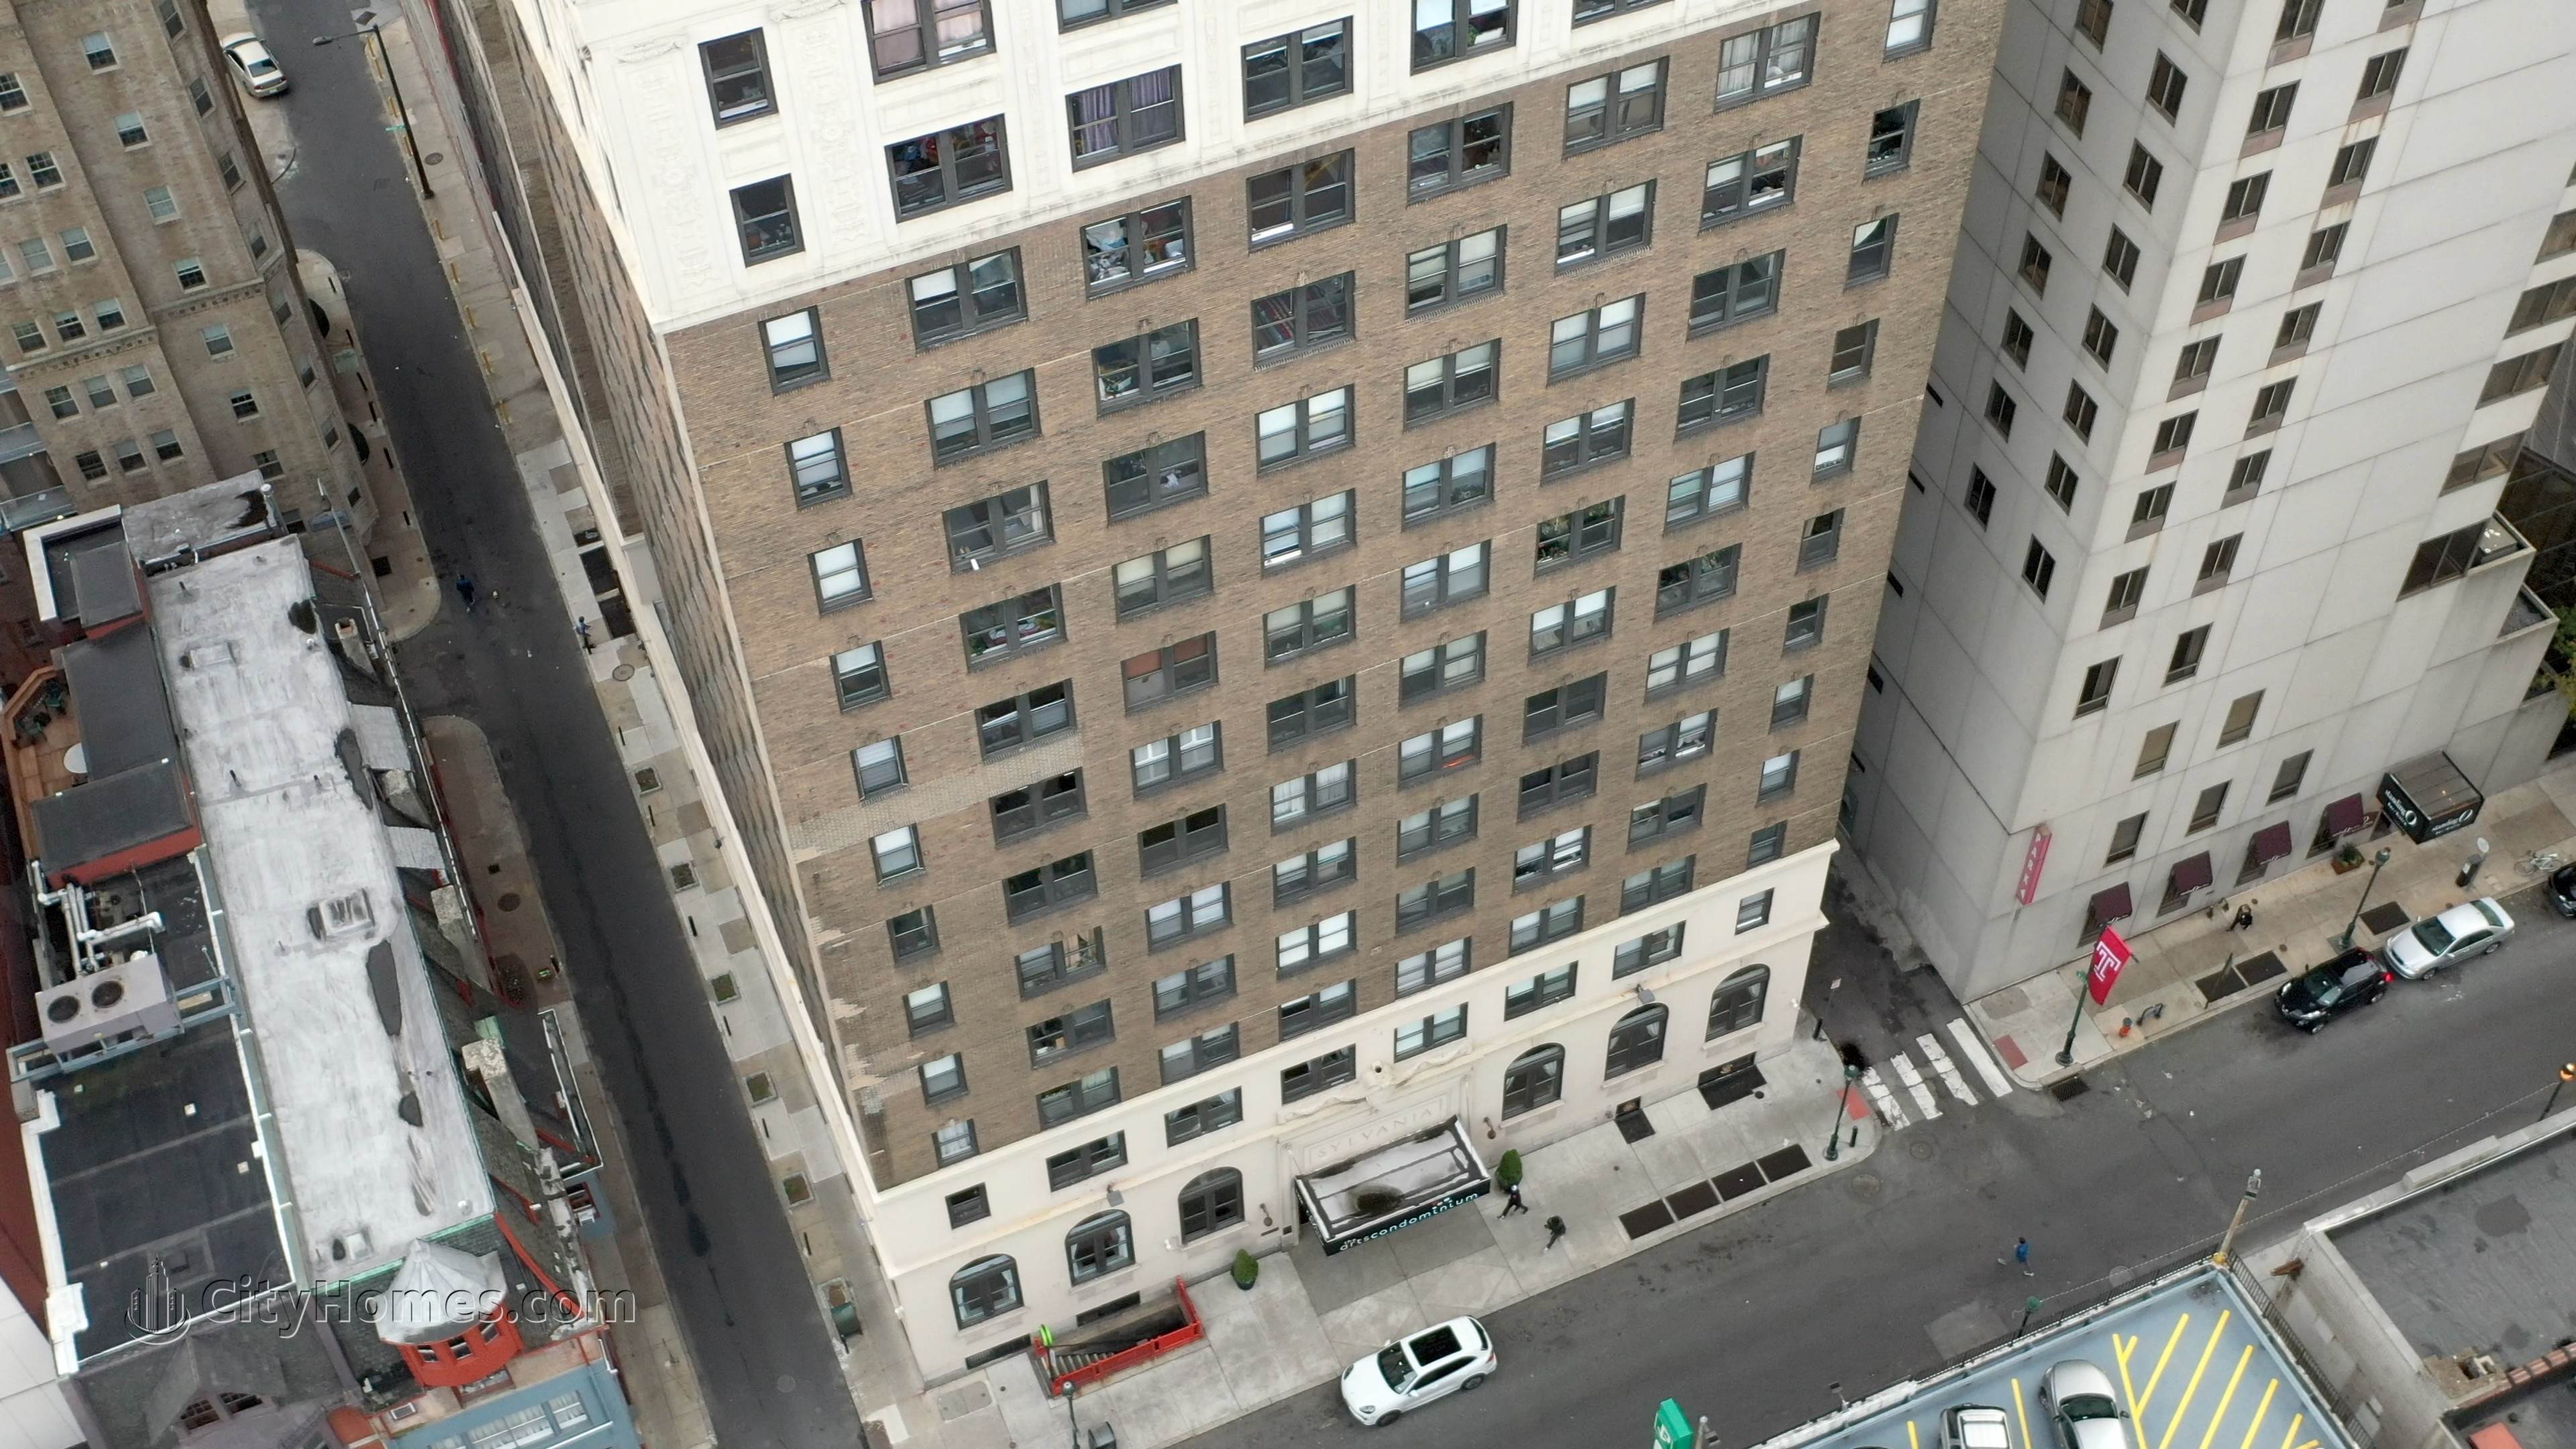 3. The Arts Condominium building at 1324 Locust St, Center City, Philadelphia, PA 19107